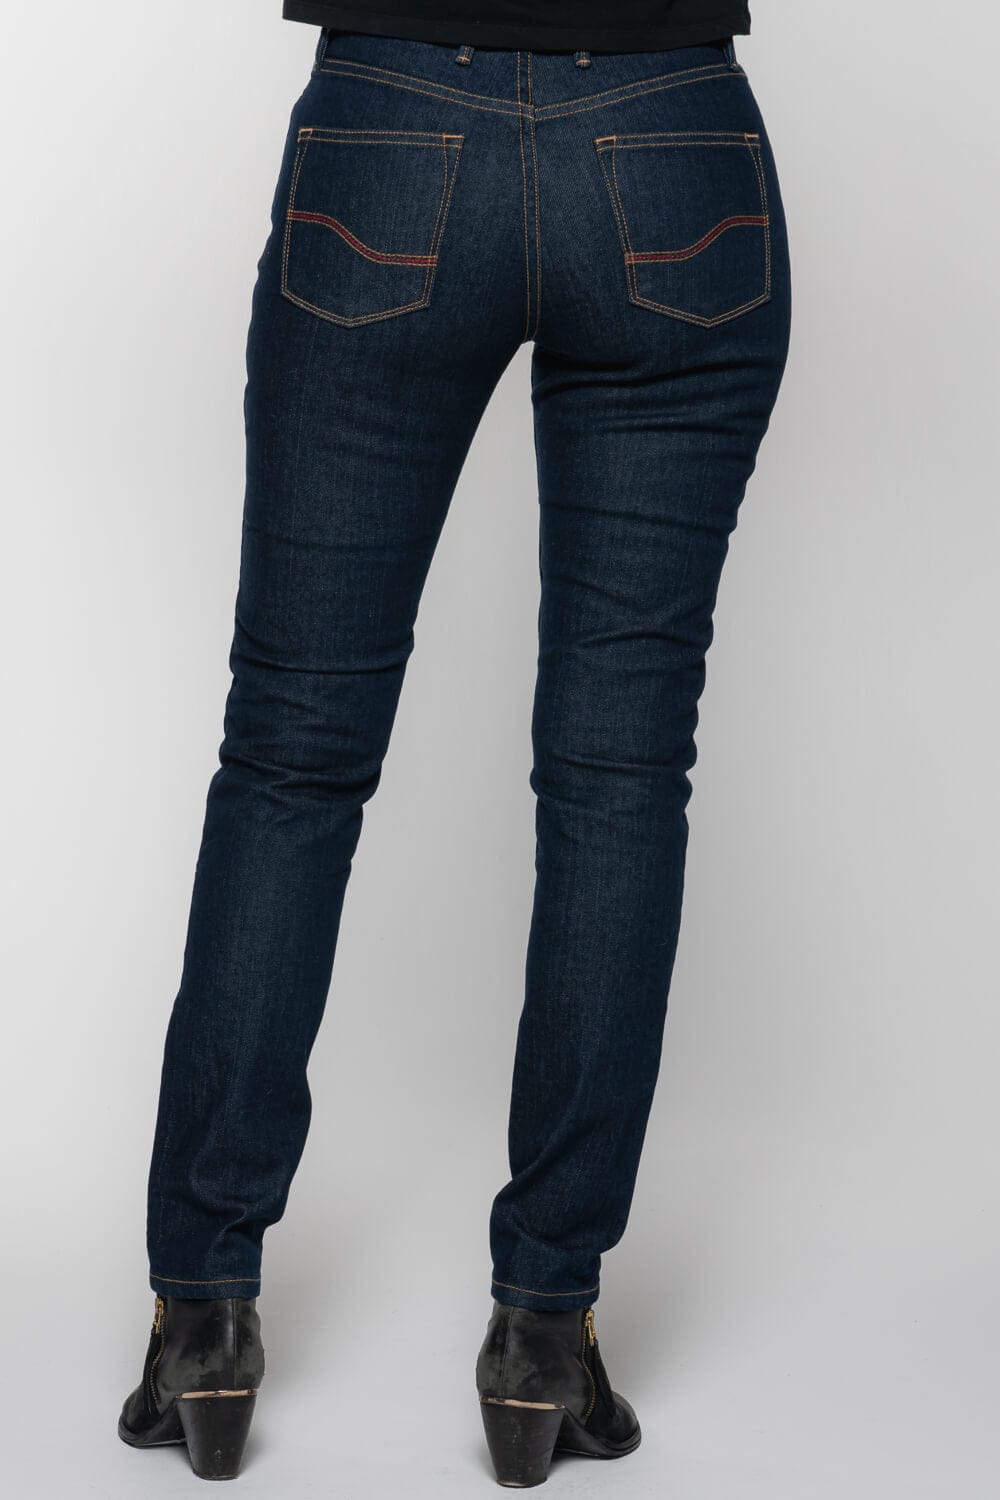 Reg.18 Ladies Oxford Dupont™ Kevlar® Motorbike Super Leggings/Pants repl  Jeans